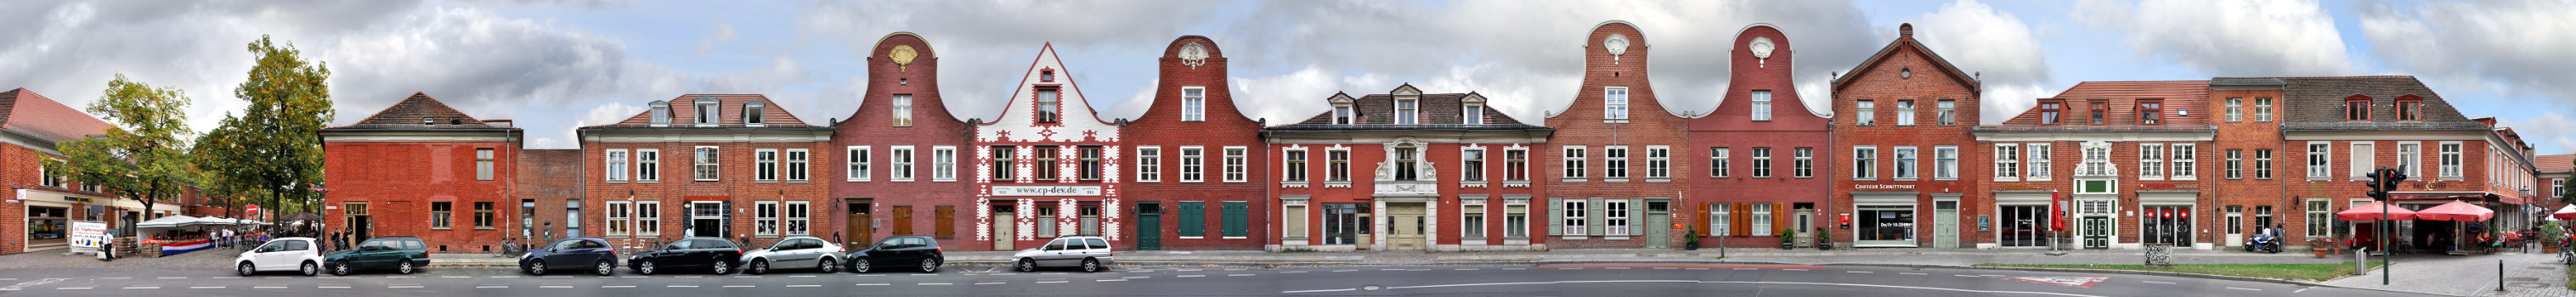 Holländisches Viertel Potsdam Panorama Architektur